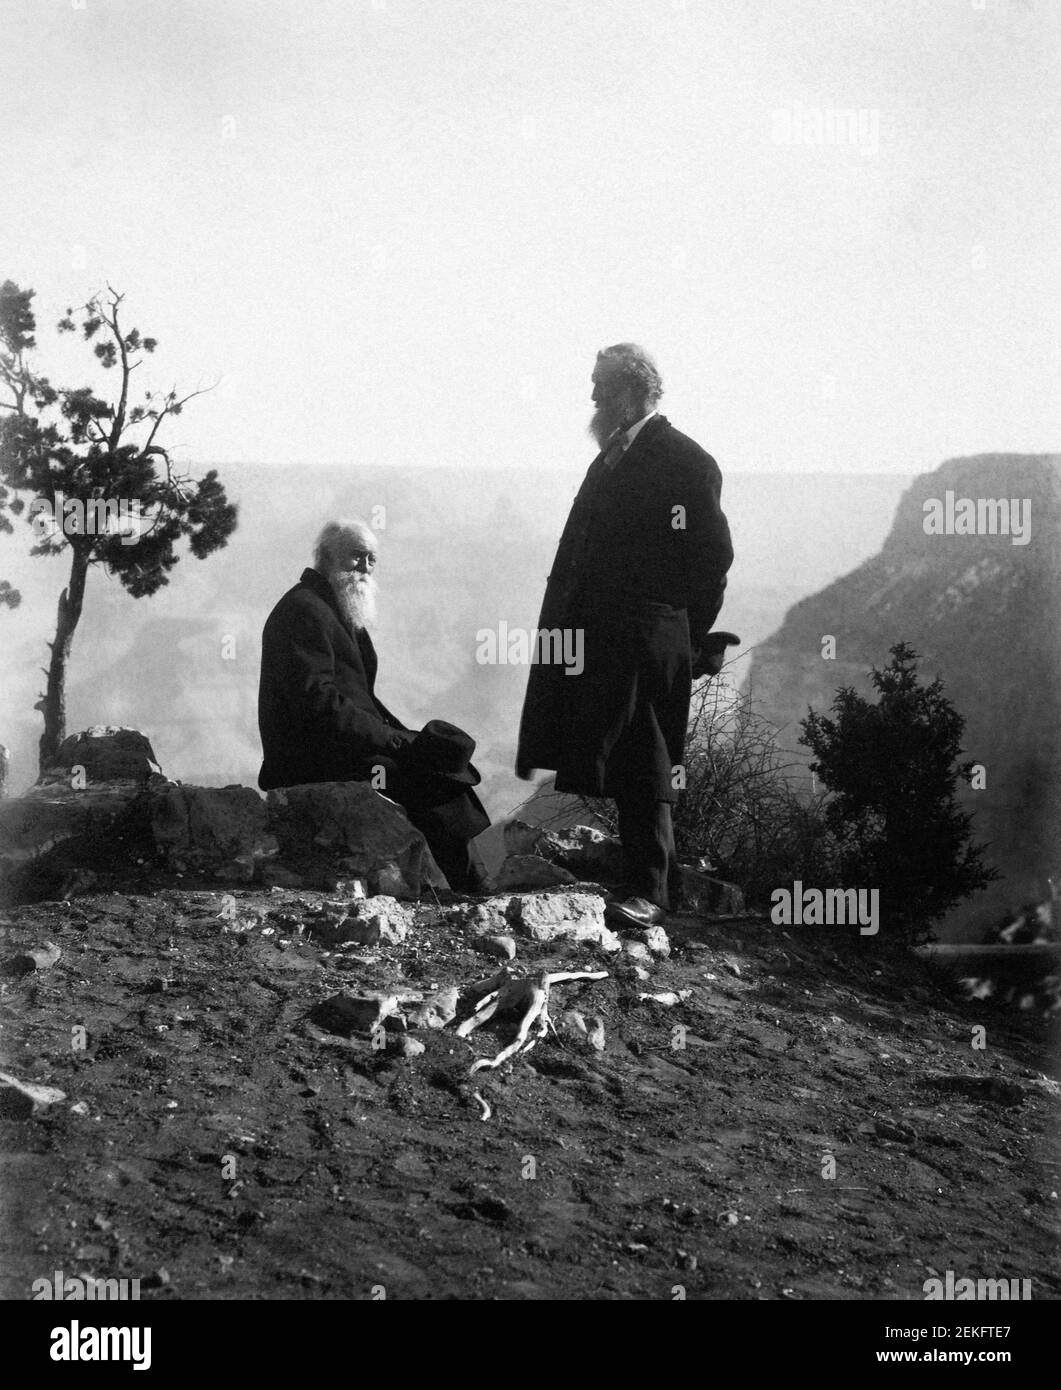 Schottisch-amerikanischer Naturforscher John Muir (1838-1914) und amerikanischer Naturforscher John Burroughs (1837-1921) am Grand Canyon, Arizona, USA 1909. Foto von Carl Everton Moon Stockfoto